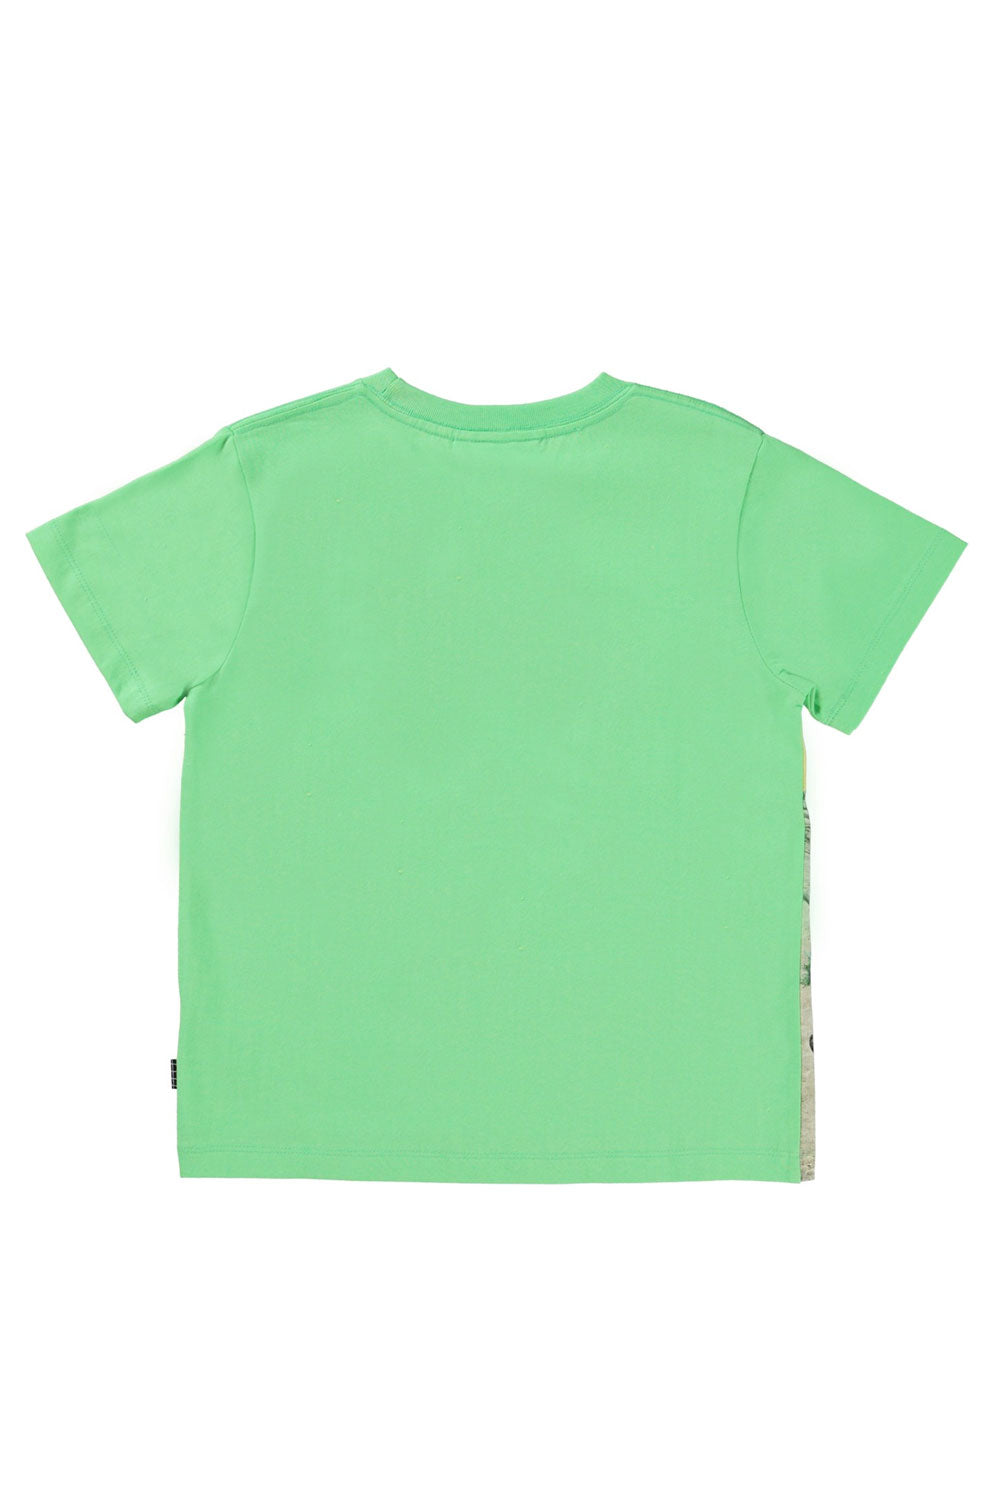 Rame T Shirt for Boys Rame T Shirt for Boys Maison7